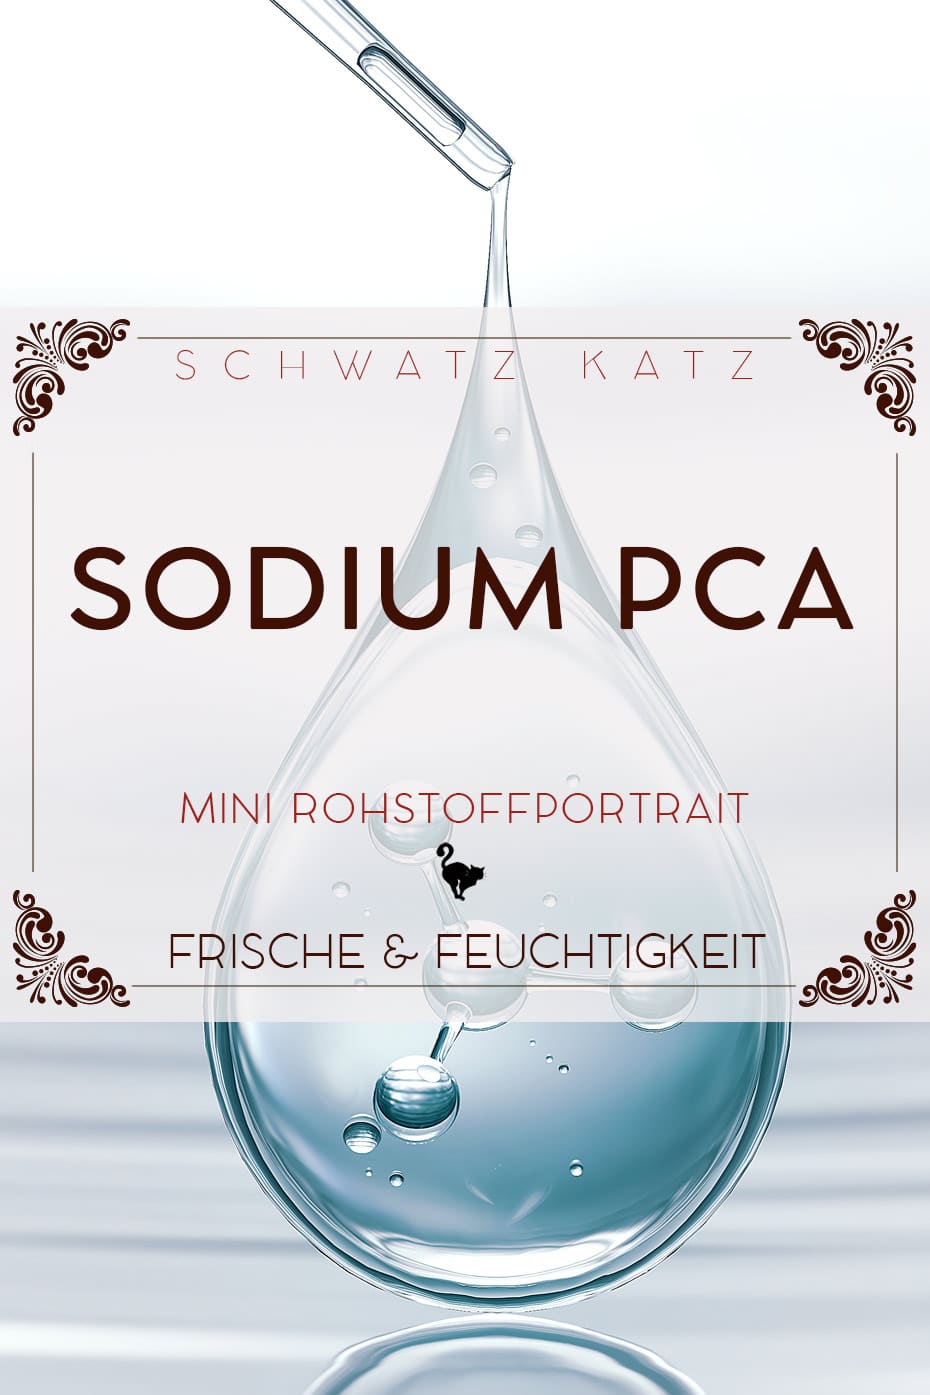 Sodium PCA Mini Rohstoffportrait auf Schwatz Katz